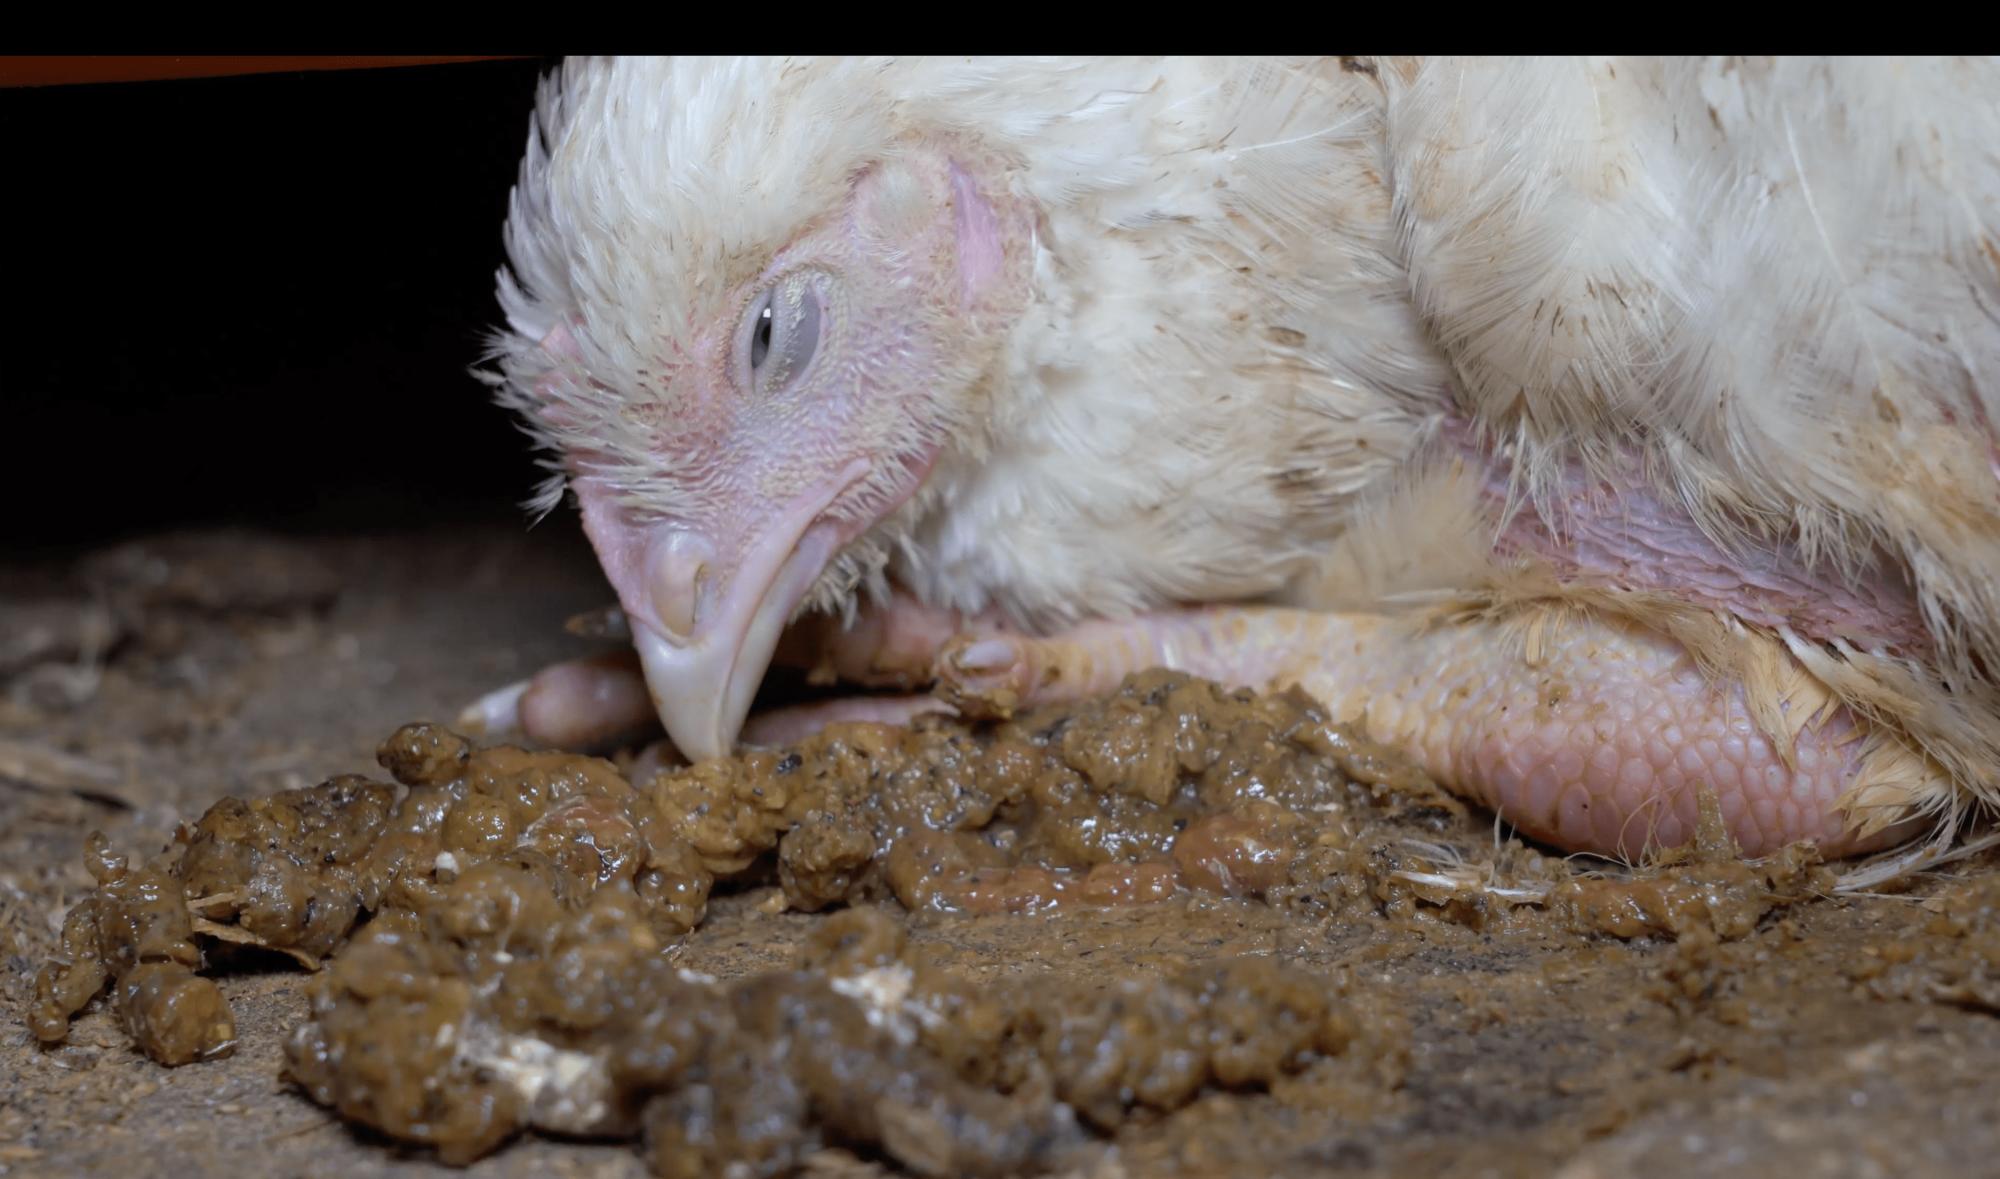 Investigación de Equalia sobre maltrato animal en granjas avícolas alemanas vinculadas a Lidl - 1